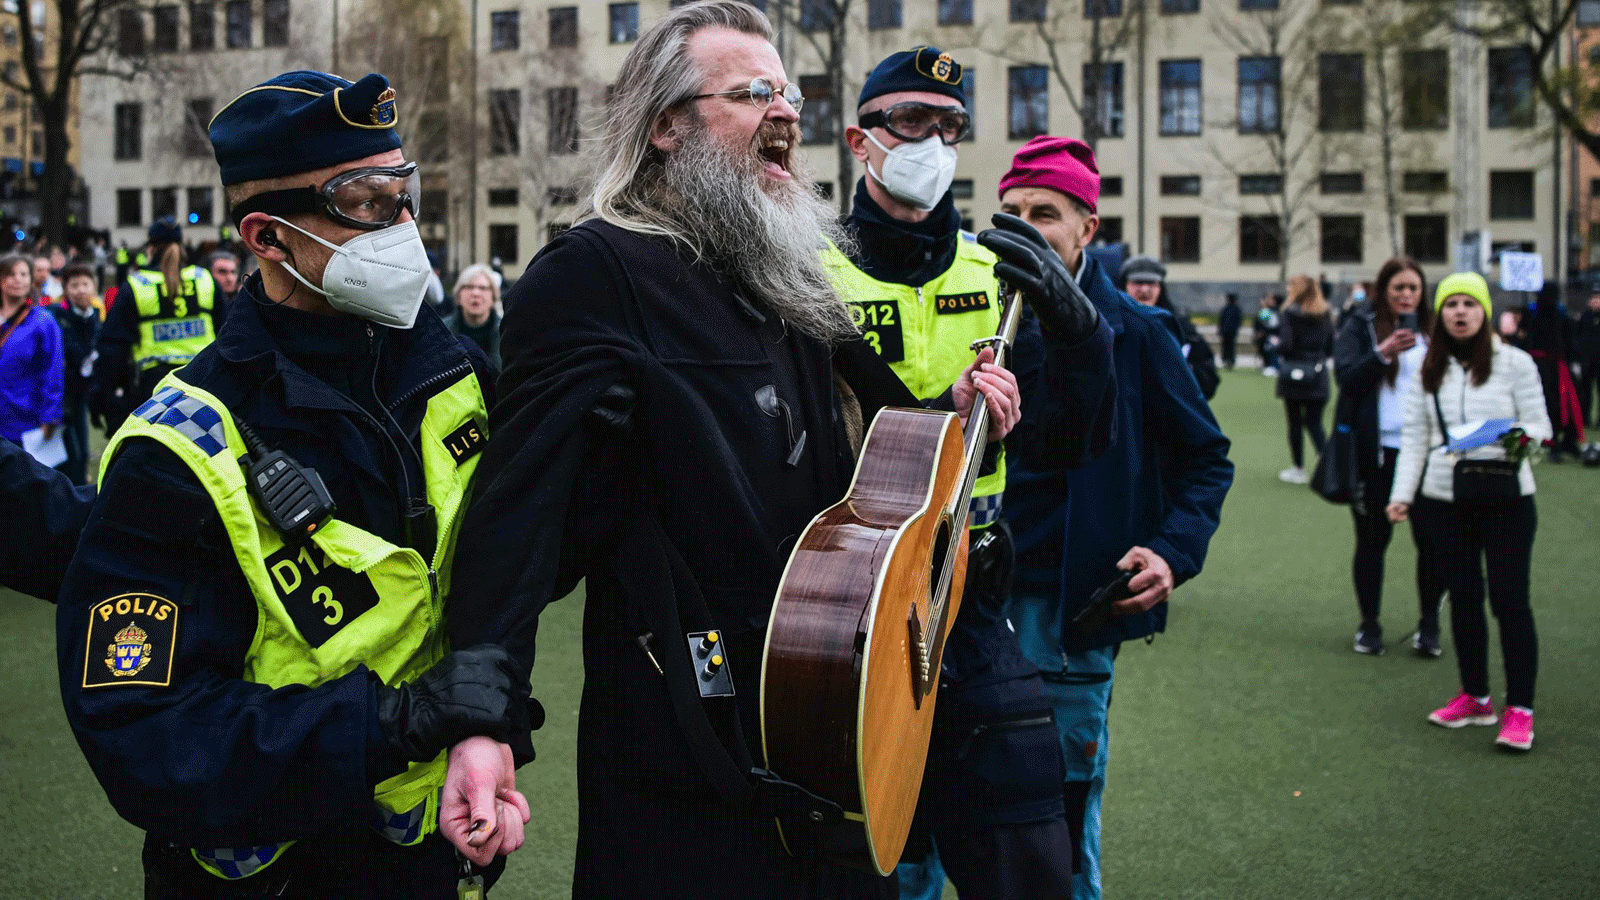 ضباط الشرطة يزيلون الناس أثناء تجمعهم للاحتجاج على قيود البلاد ضد فيروس كورونا في وسط ستوكهولم، السويد .1 أيار\مايو 2021